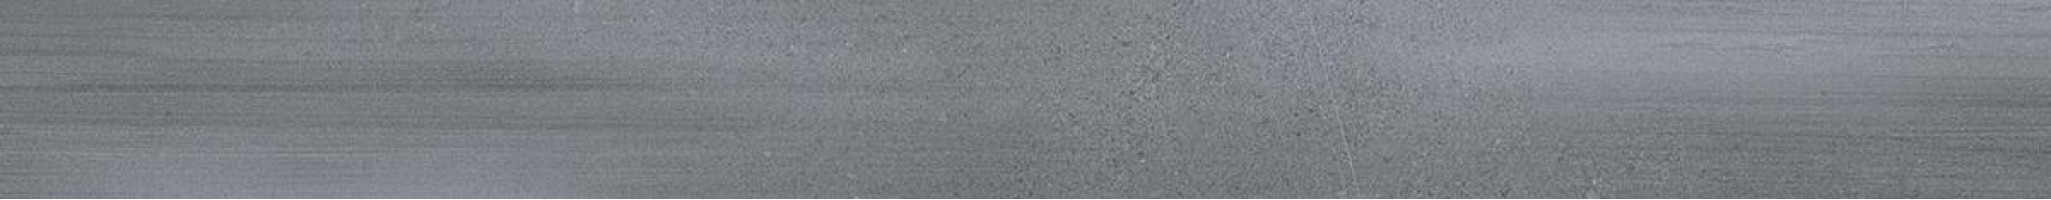 Роверелла серый 10.7x119.5 DL500520R/5